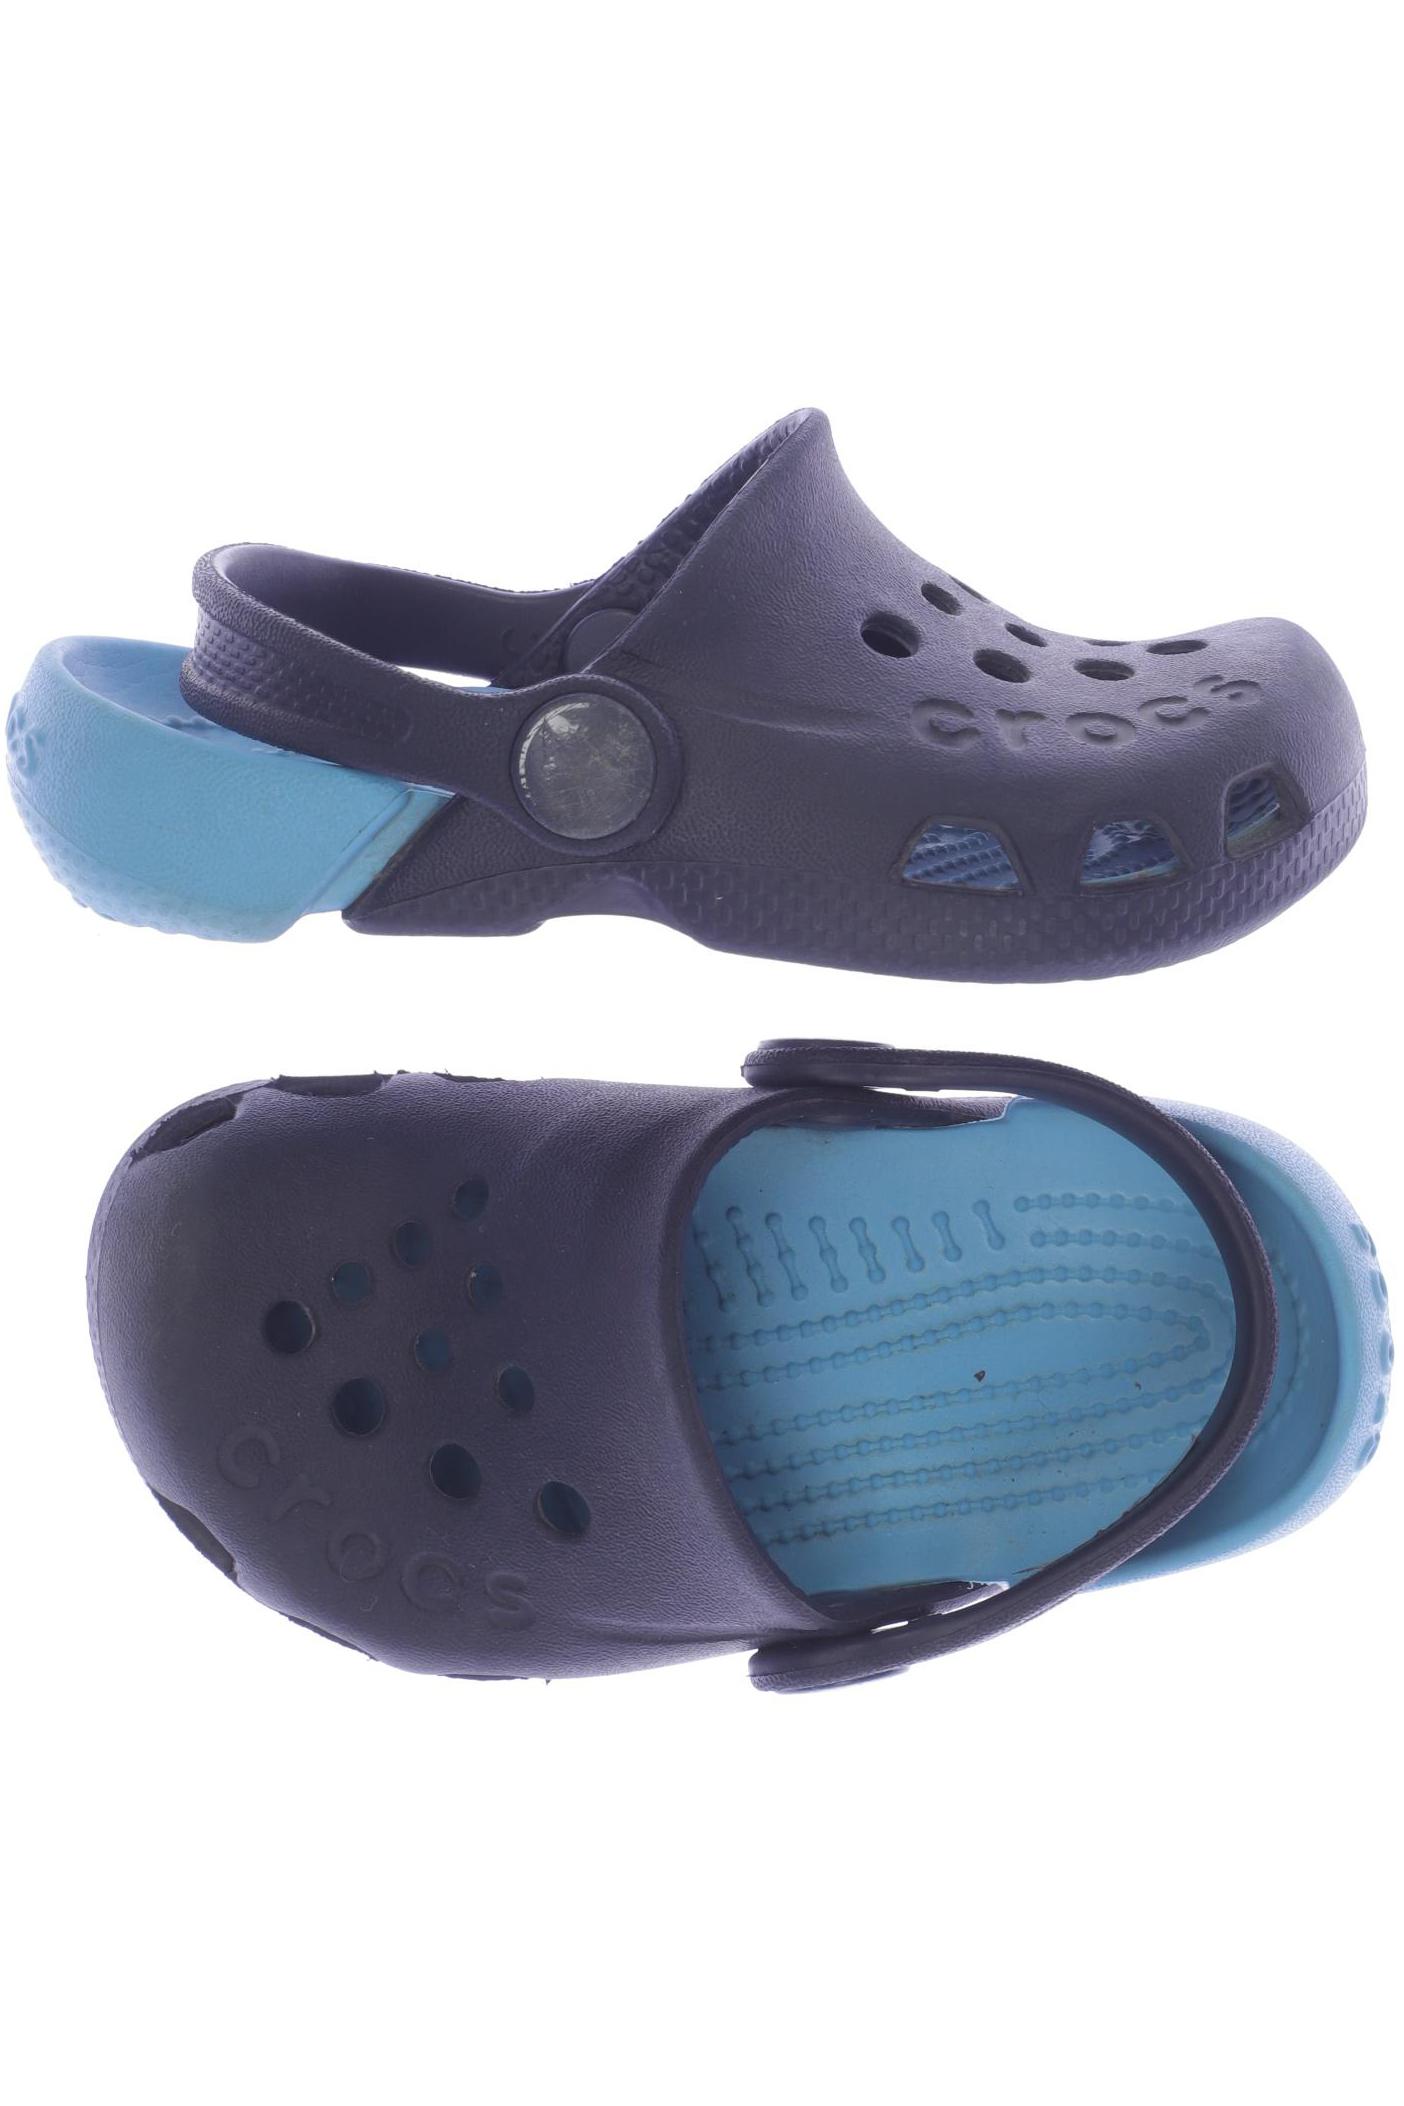 Crocs Jungen Kinderschuhe, marineblau von Crocs